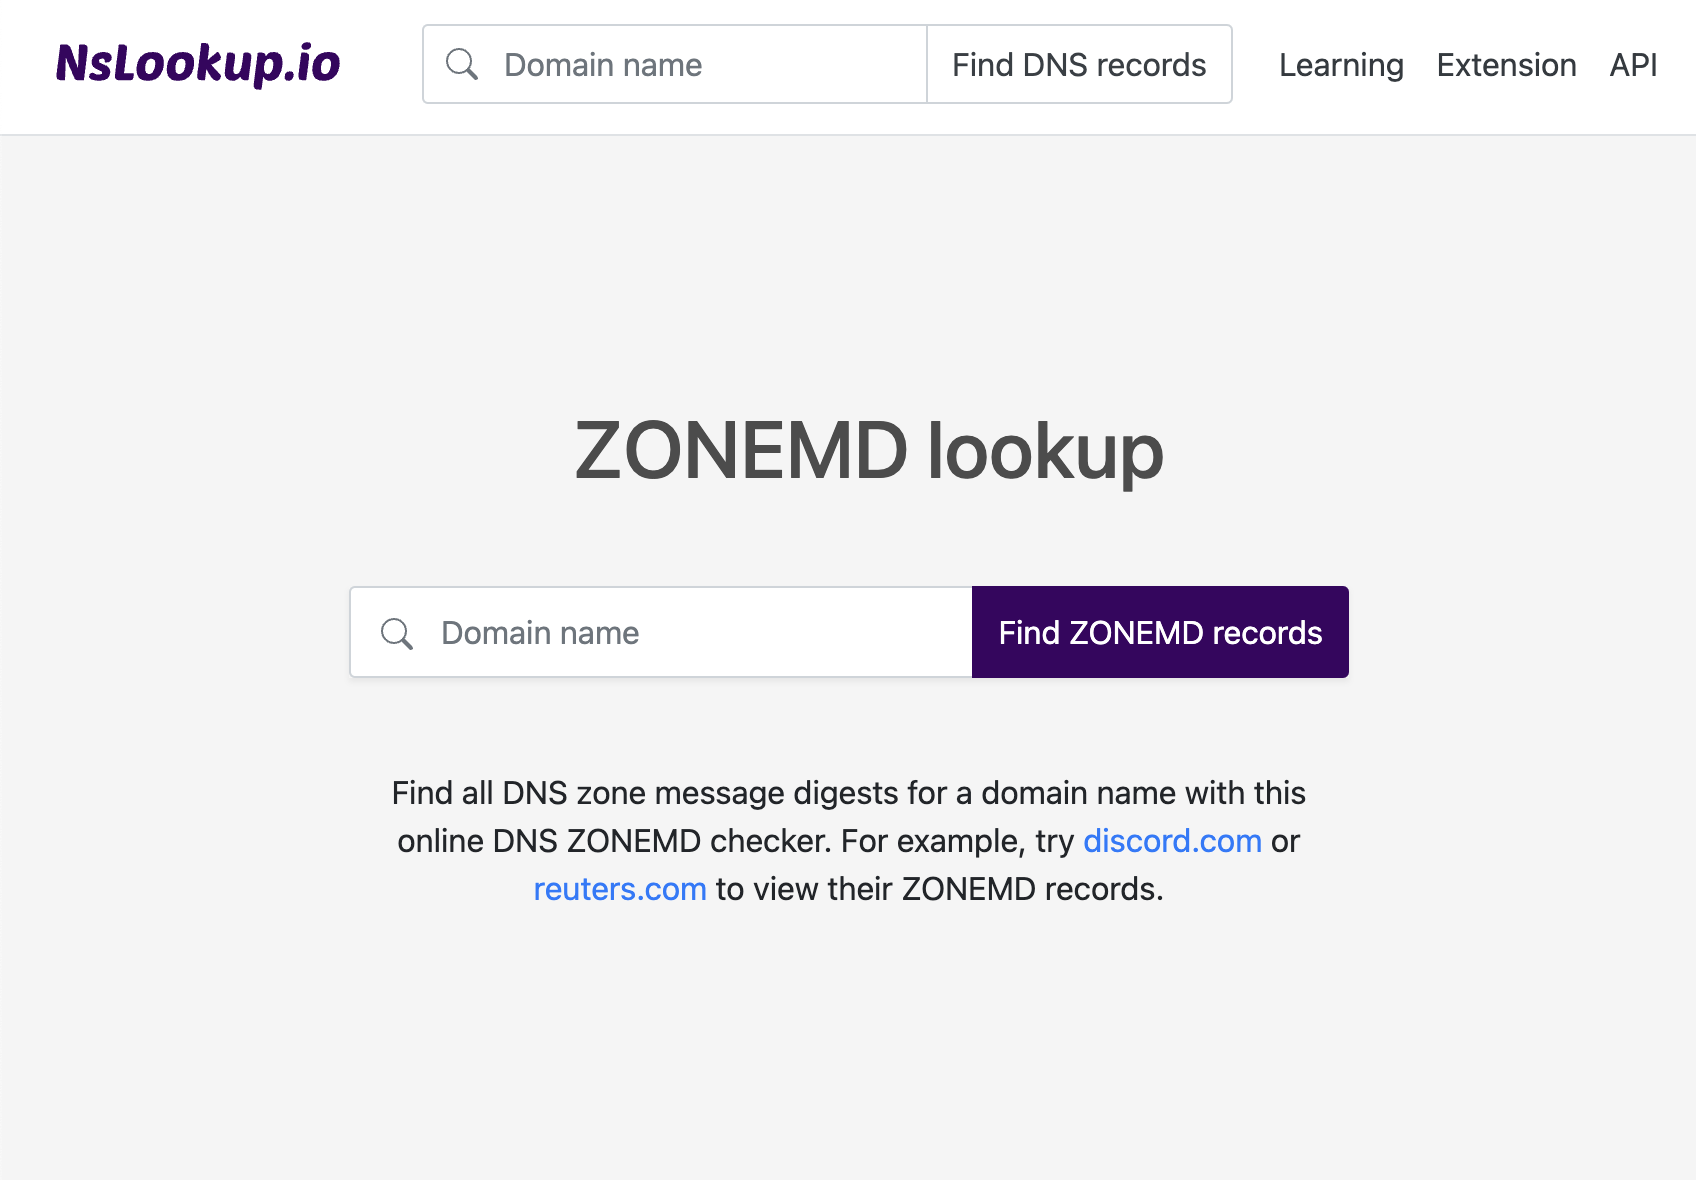 Open the ZONEMD lookup tool